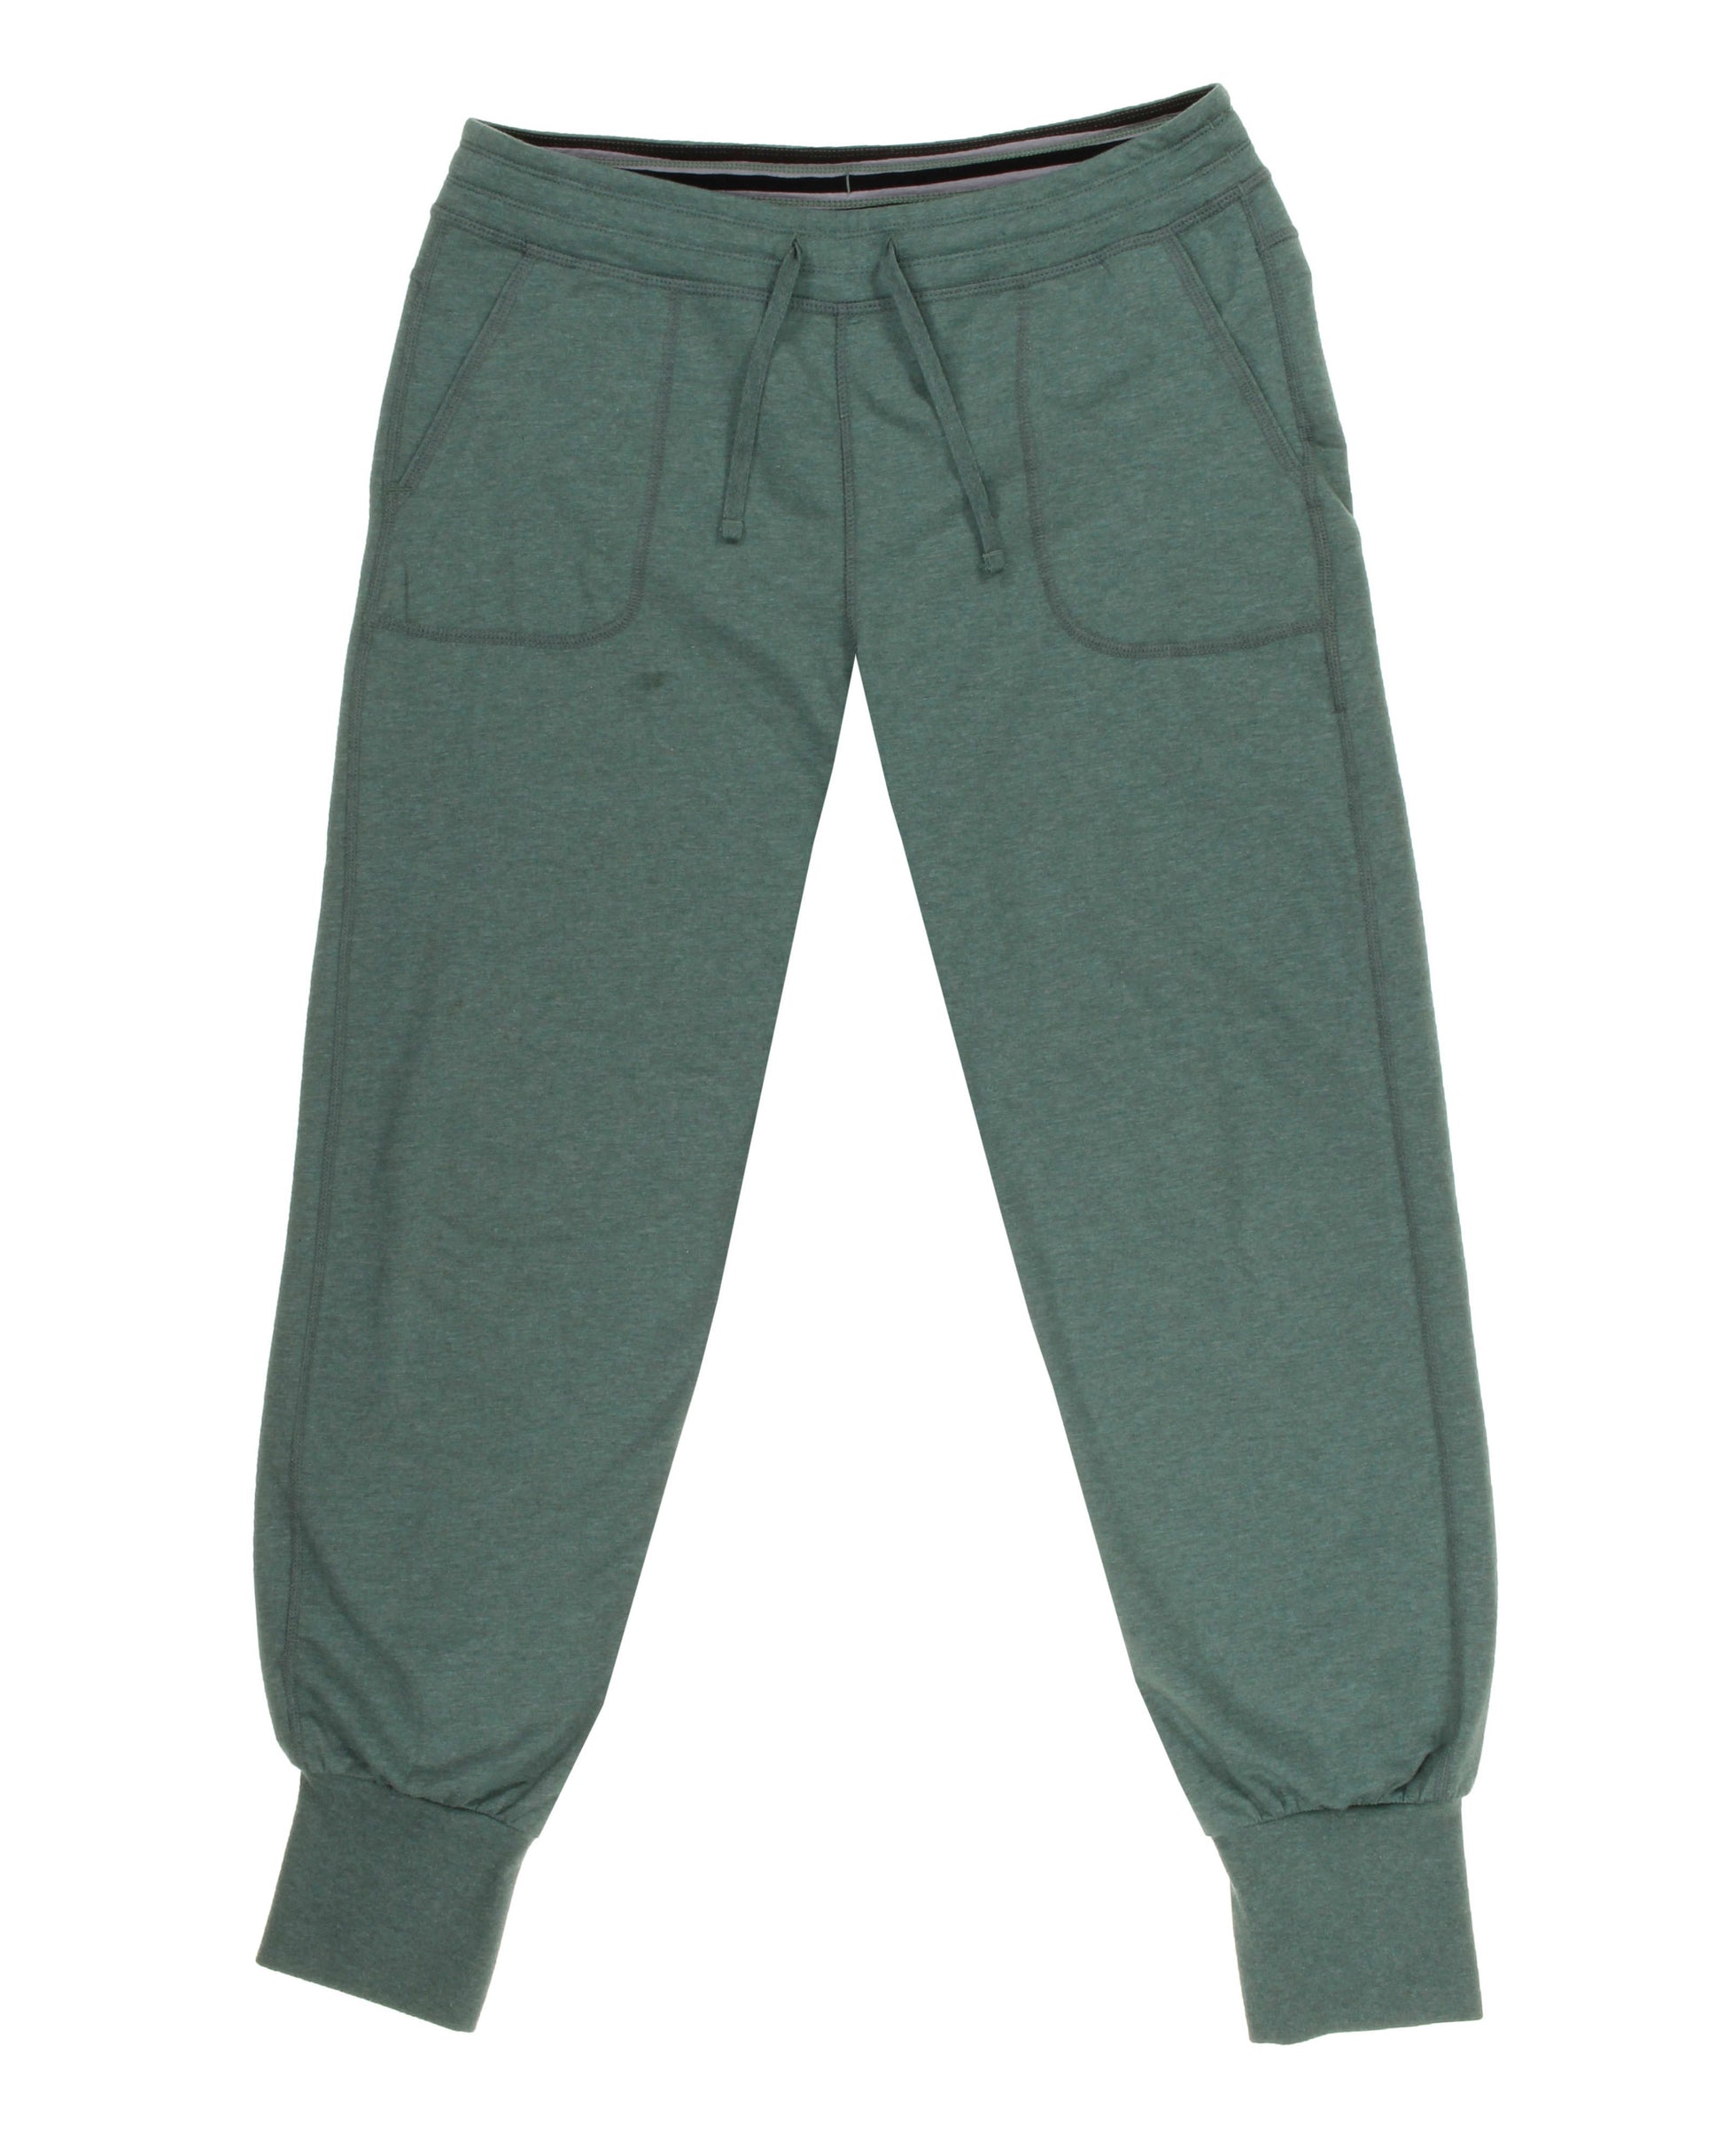 https://wornwear.patagonia.com/cdn/shop/products/evq2l7mezx6fcnehxrq9.jpg?v=1709752303&width=1946